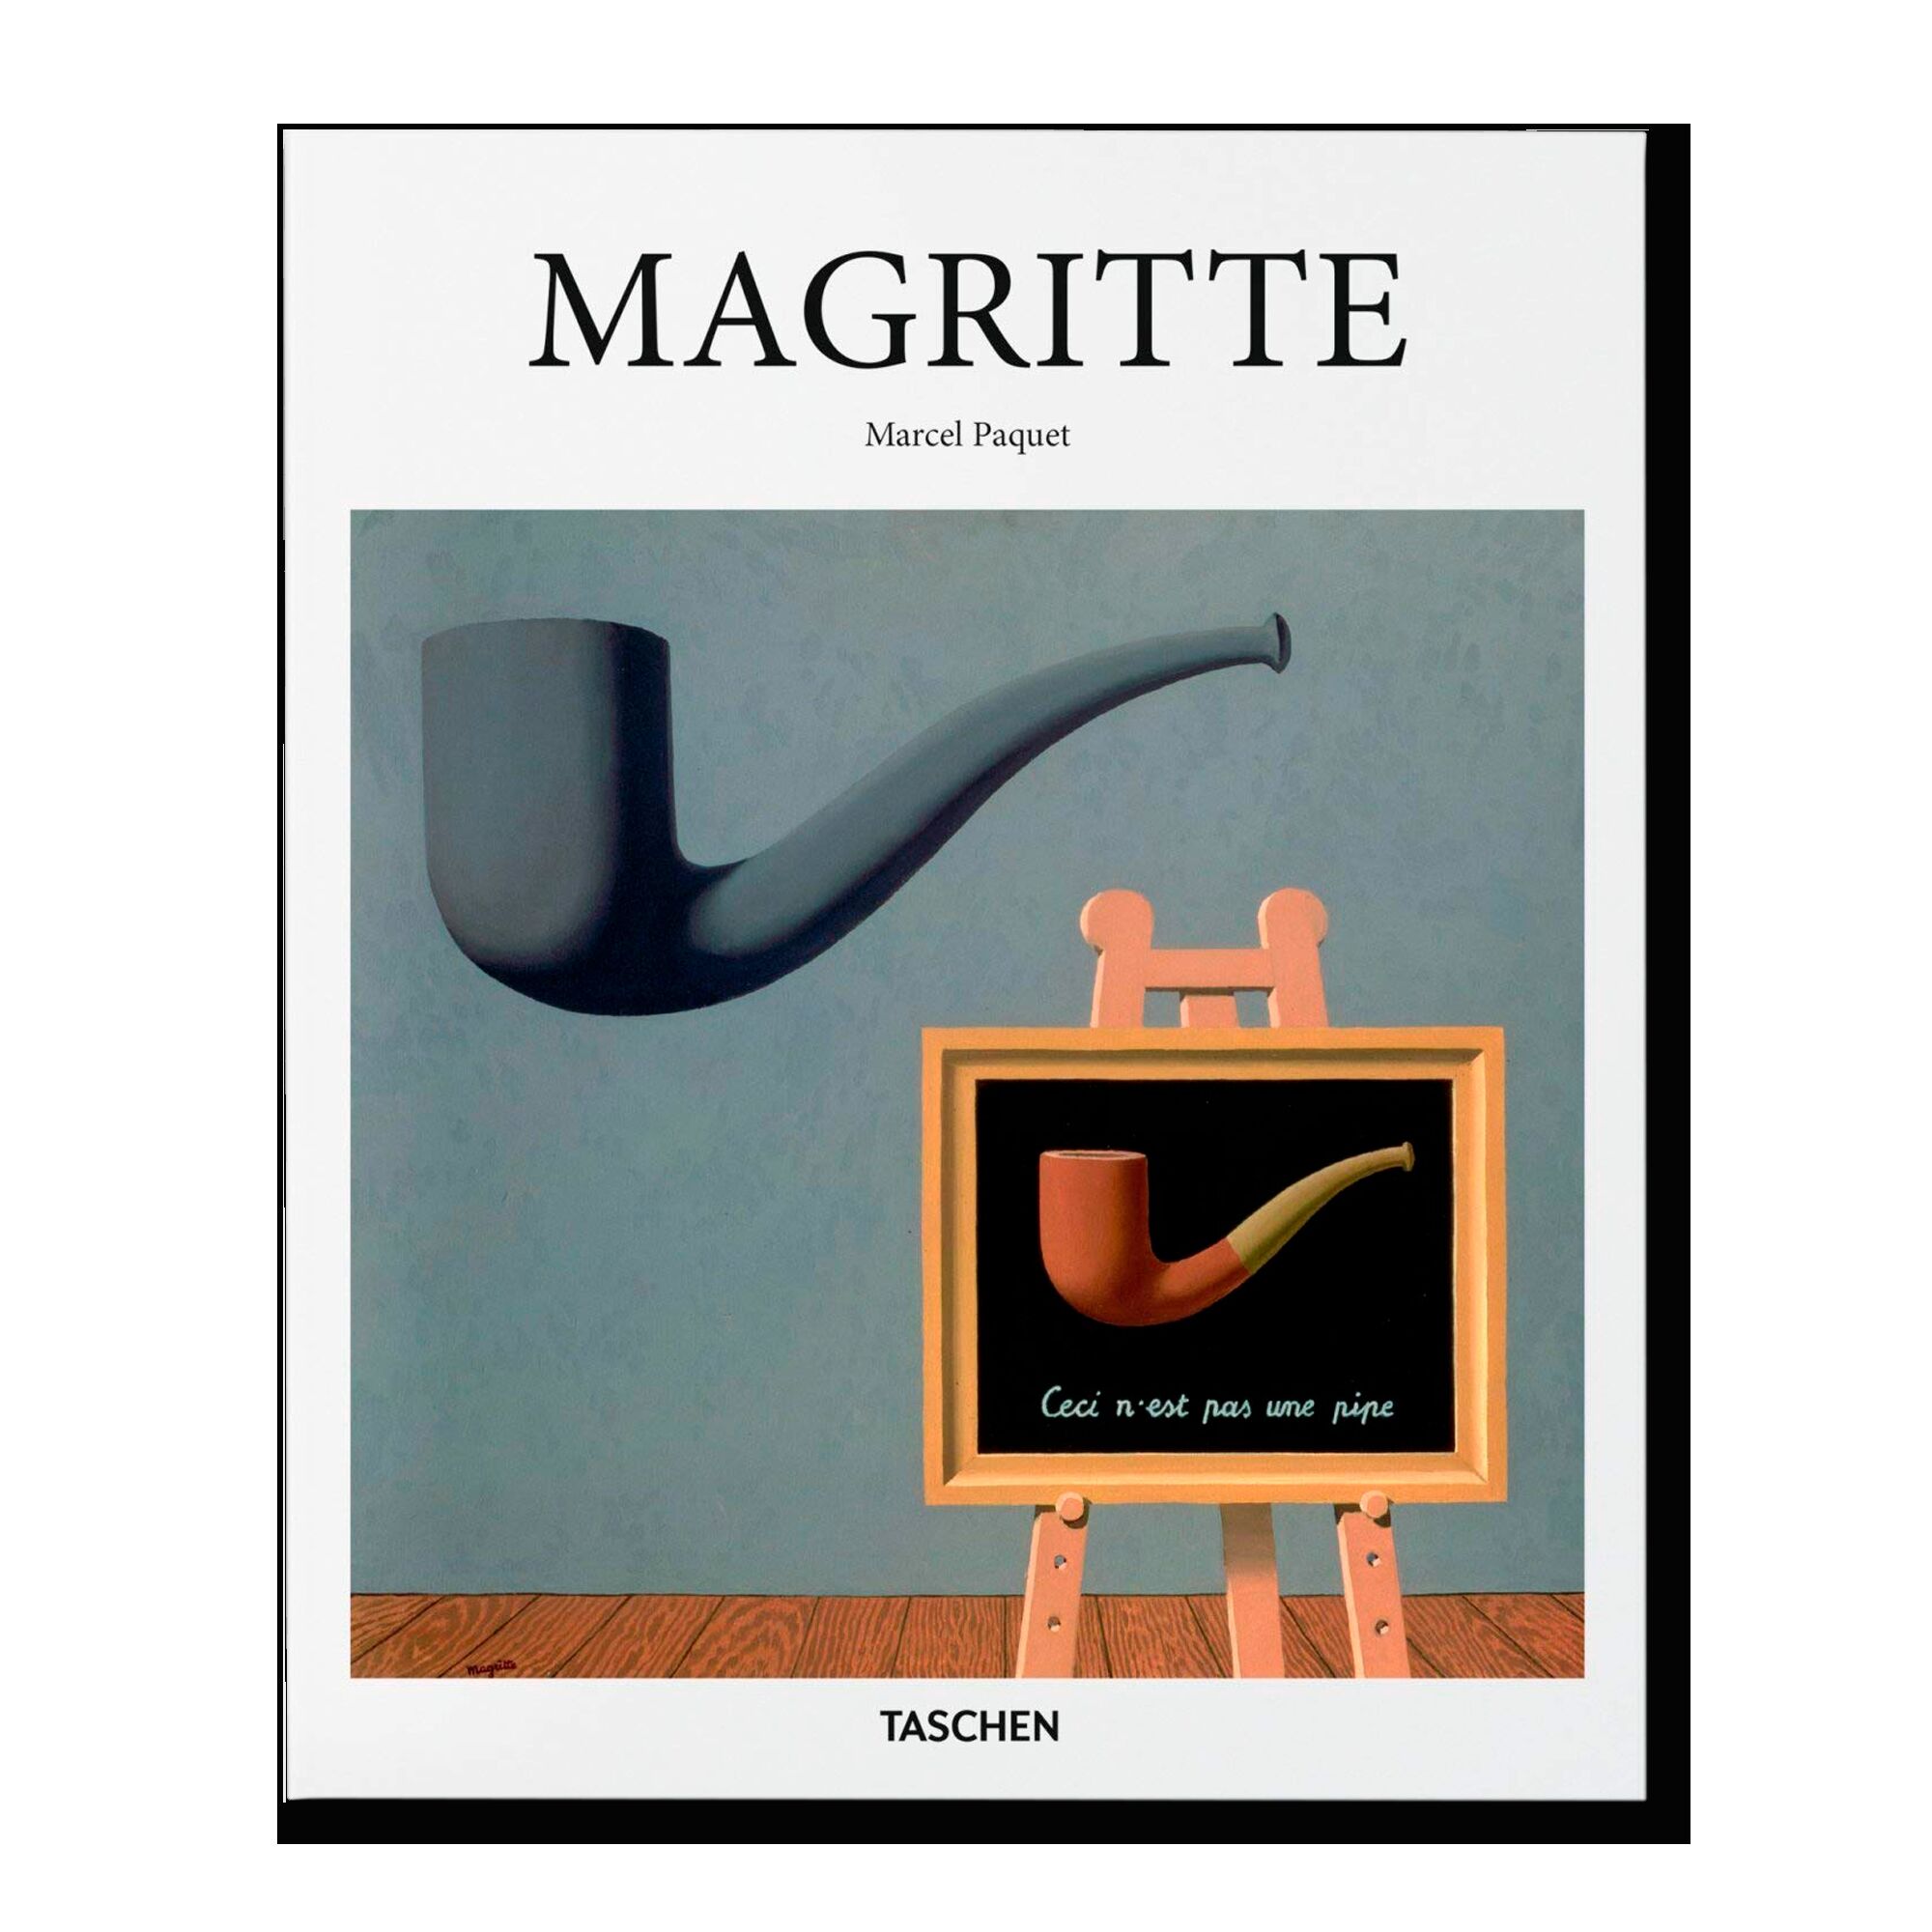 Magritte (Basic Art)